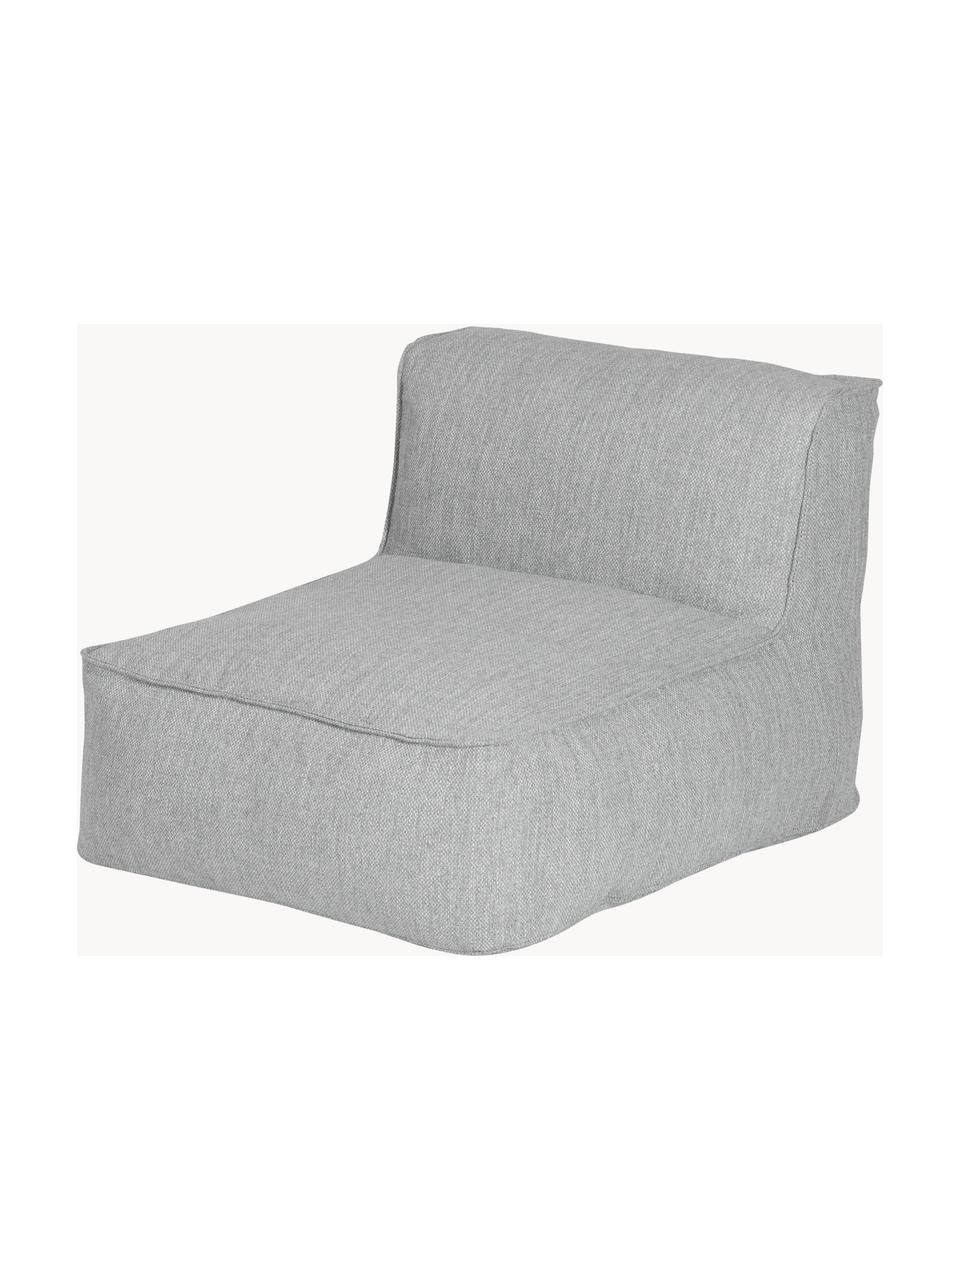 Módulo central de exterior sofá Grow, Tapizado: 100% poliéster, resistent, Tejido gris claro, An 75 x F 95 cm